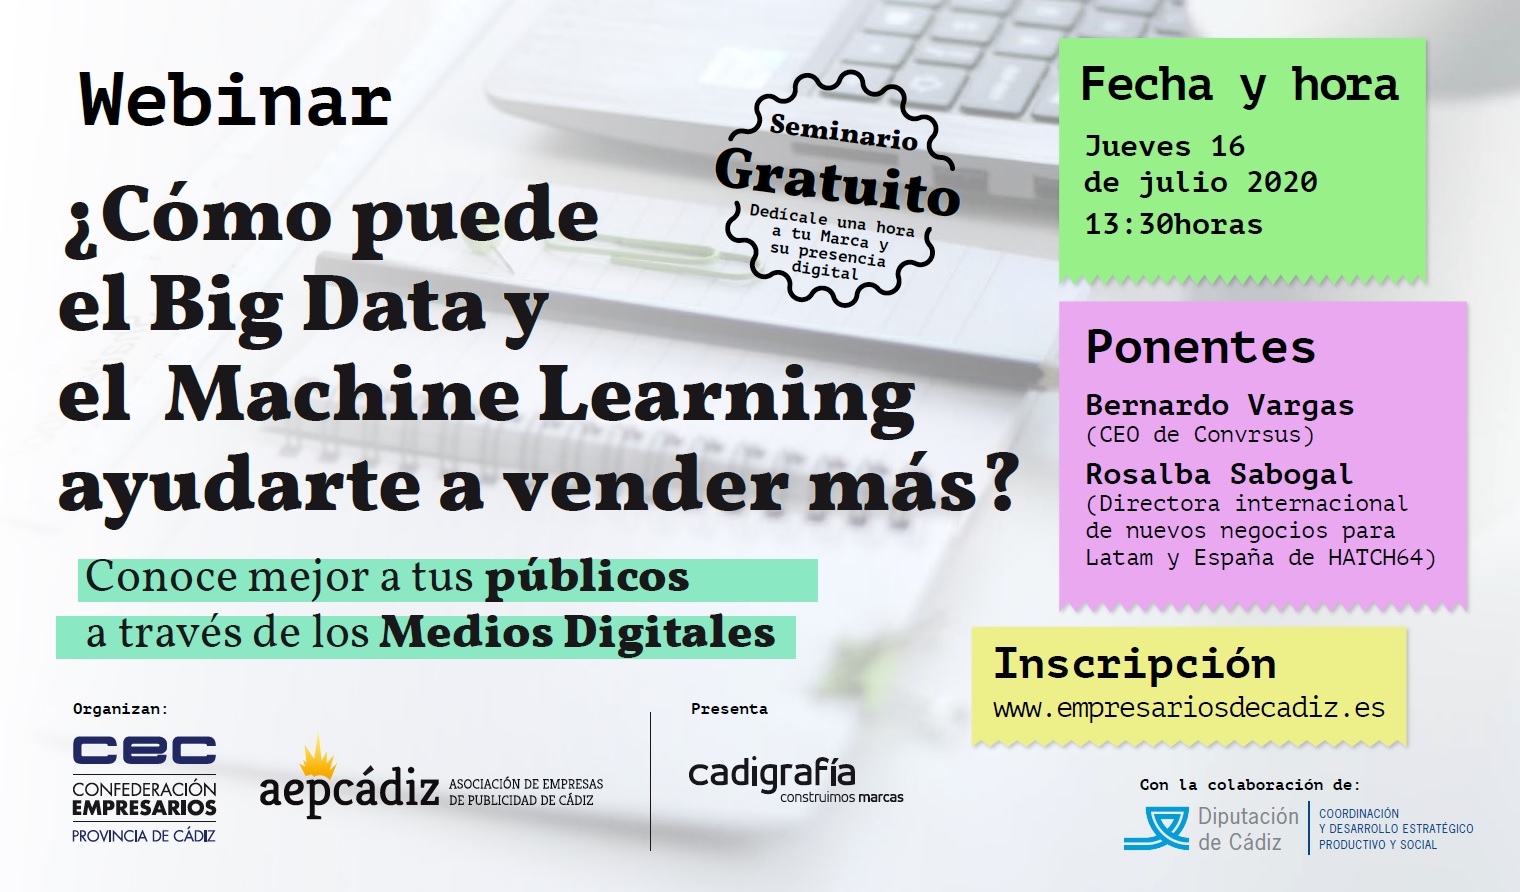 WEBINAR COMO PUEDE EL BIG DATA Y EL MACHINE LEARNING AYUDARTE A VENDER MÁS 16.07